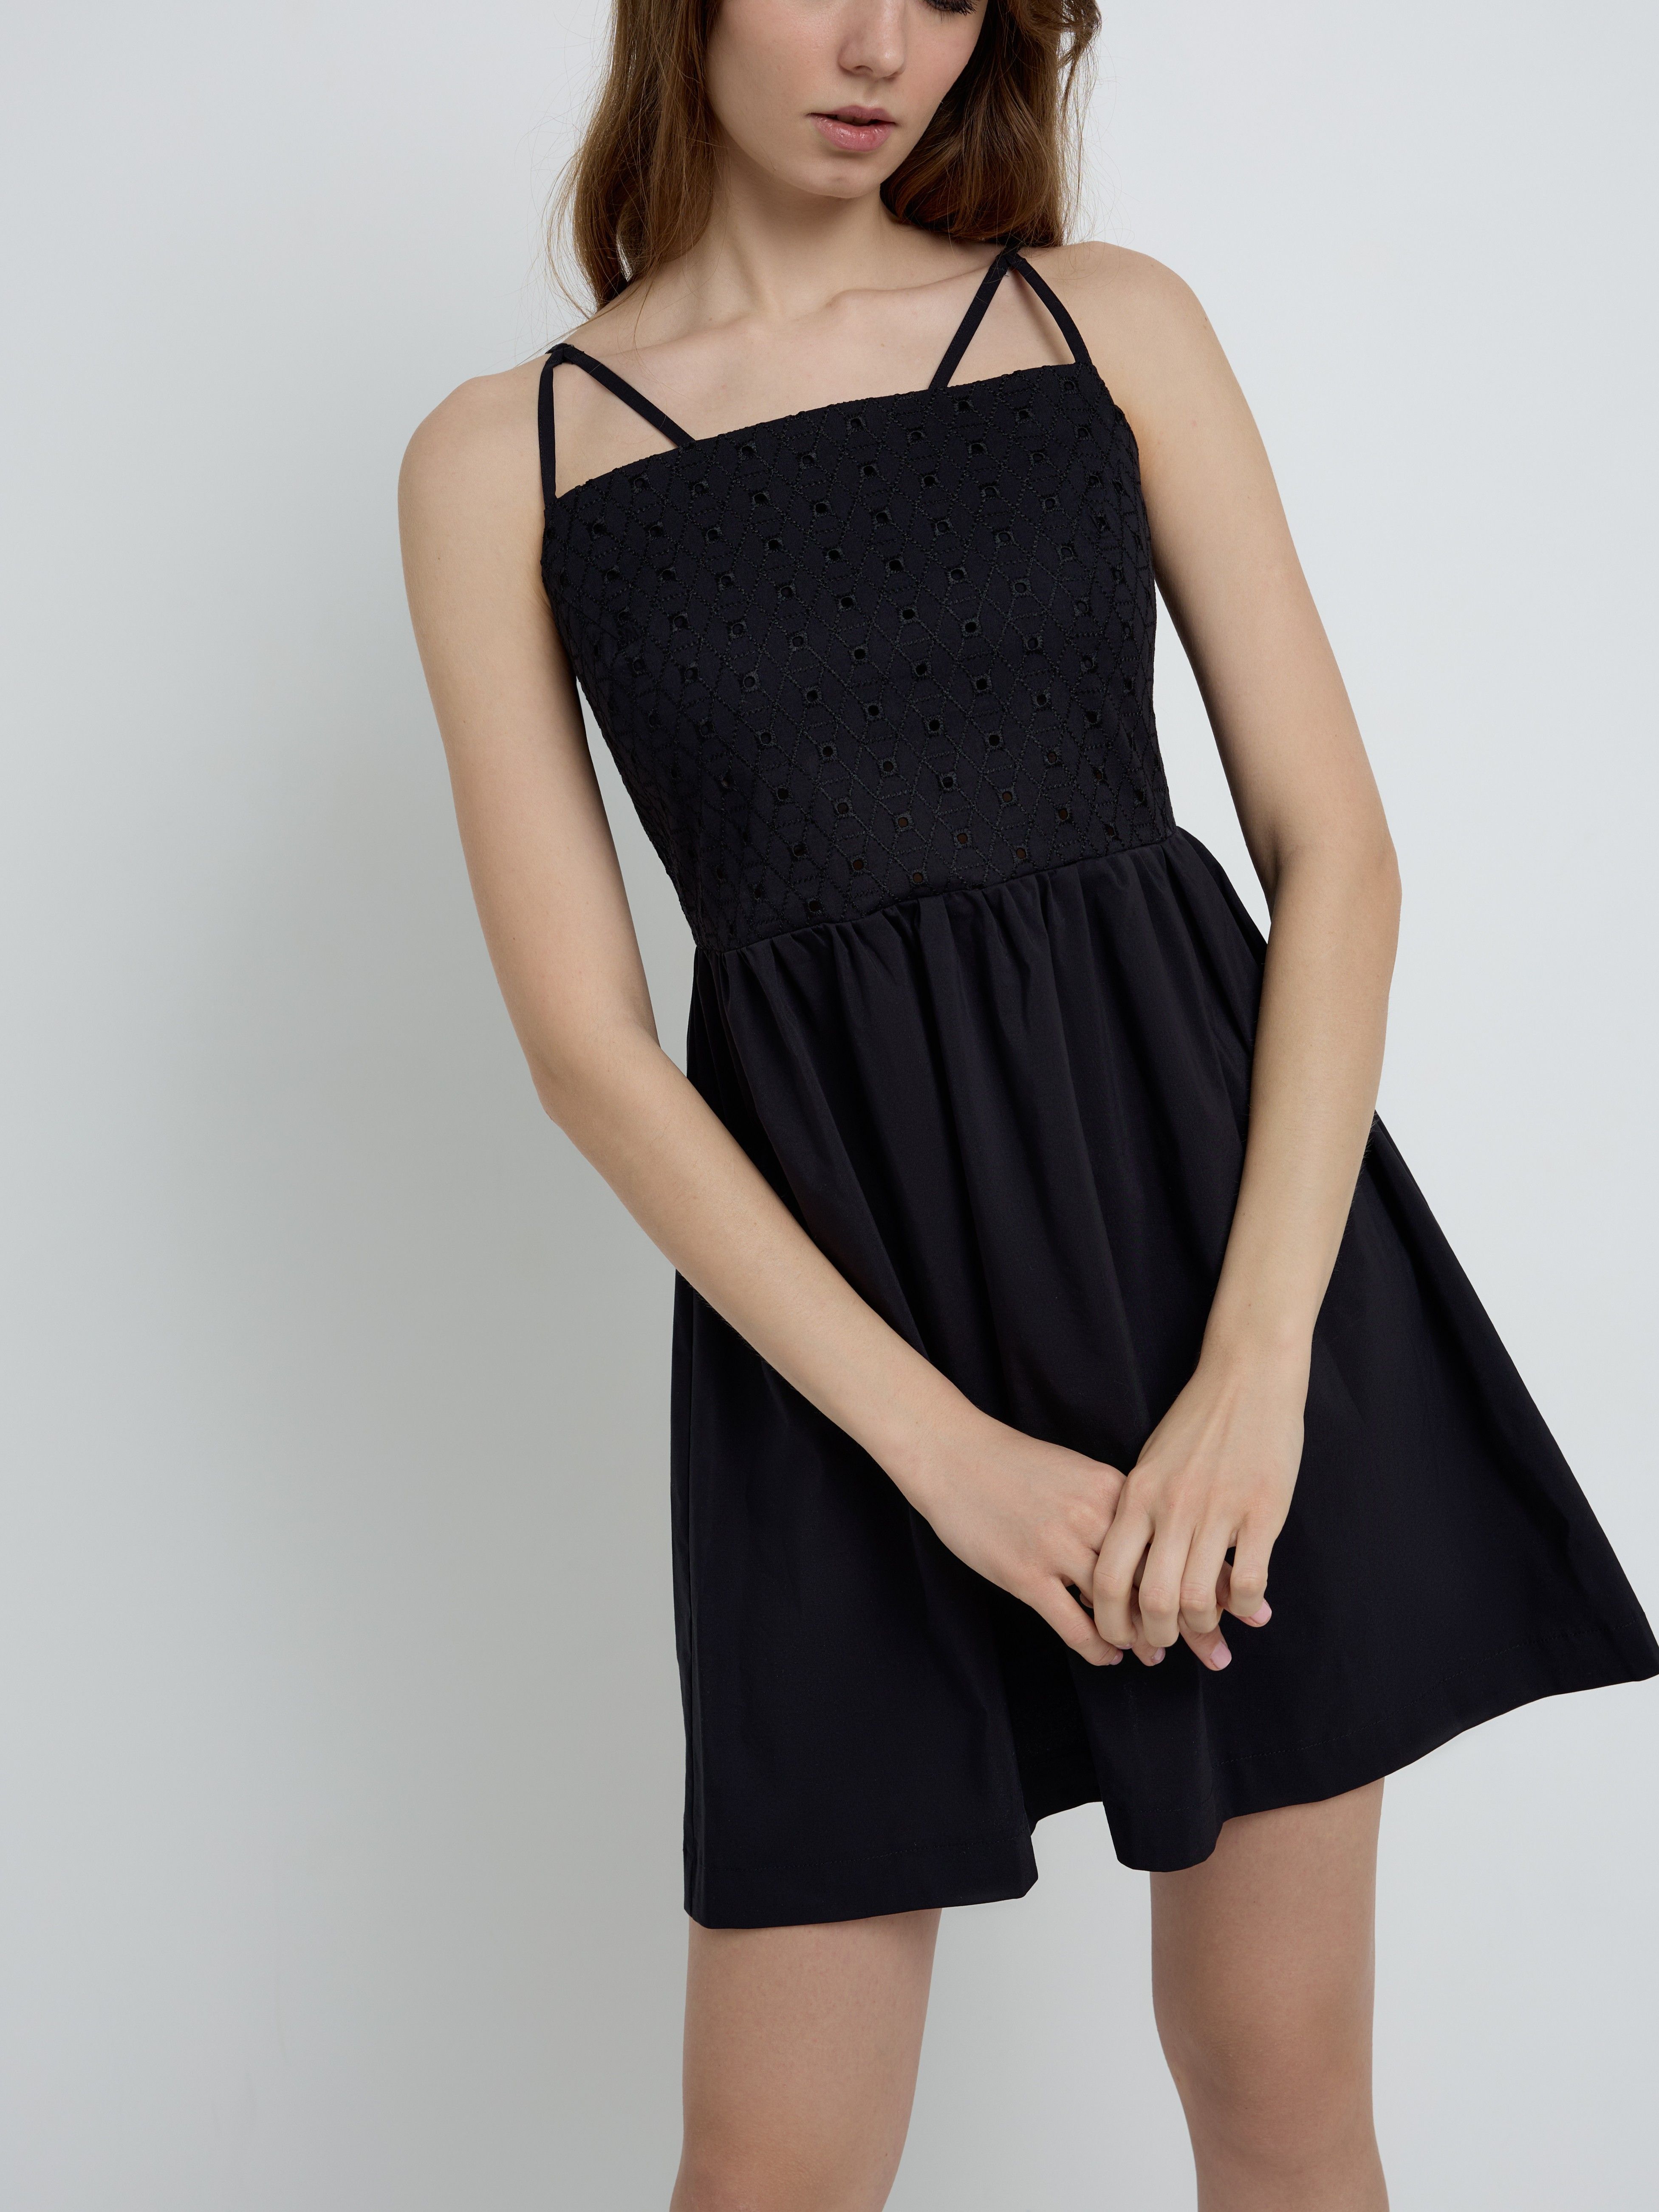 Легкое платье на тонких бретелях с вышивкой ришелье LPL 2339 Conte ⭐️, цвет black, размер 170-84-90/xs - фото 1